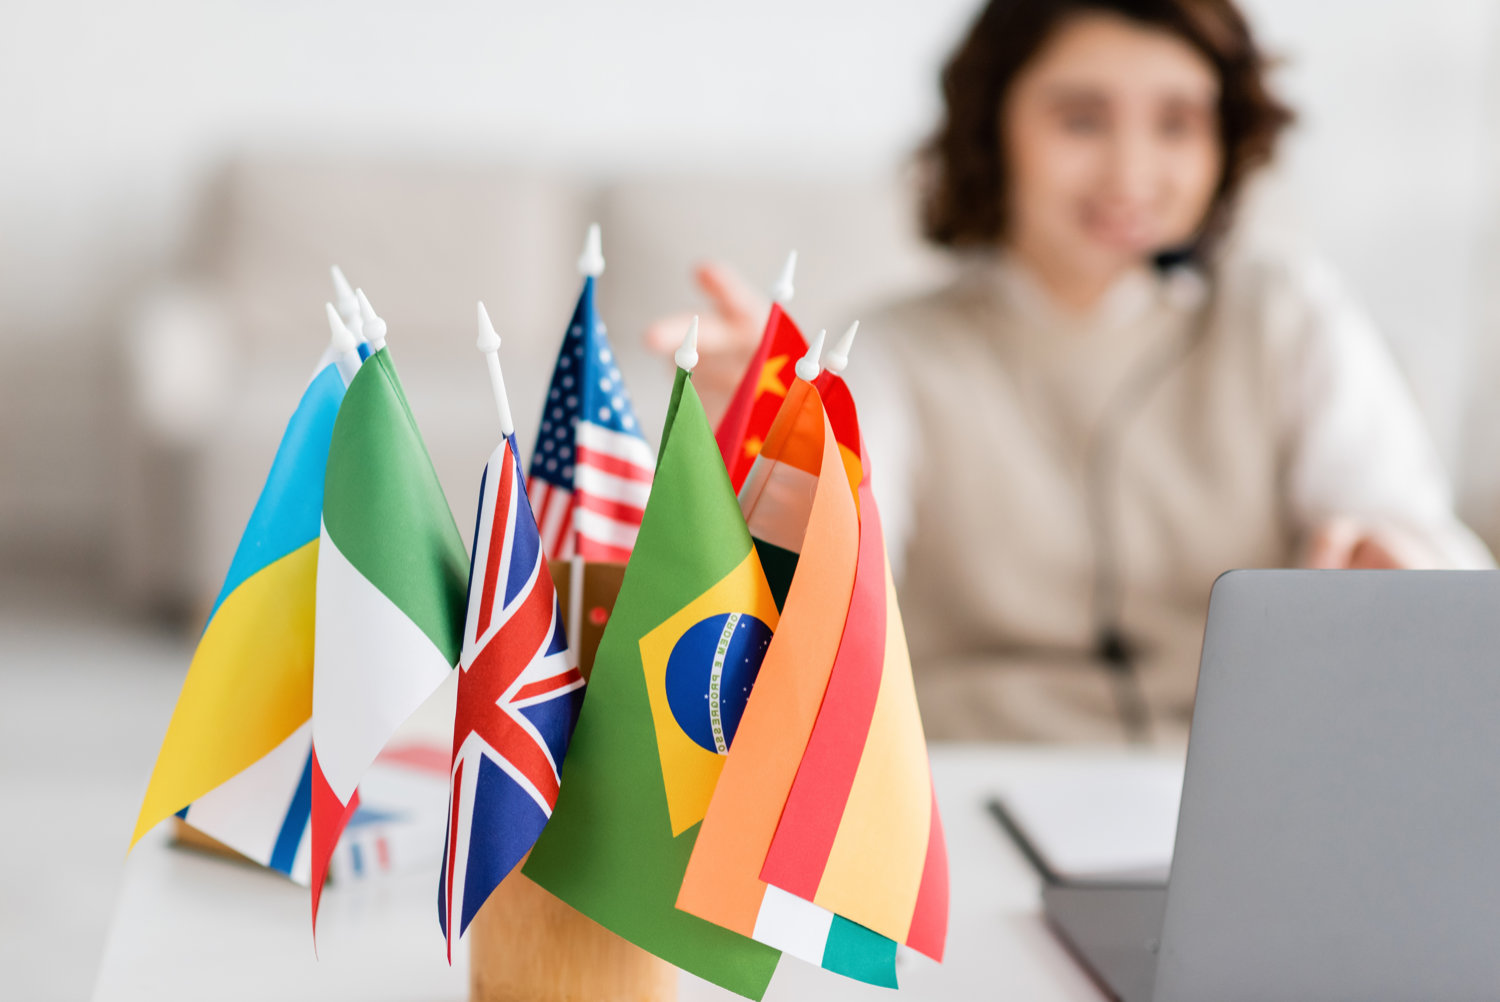 Dolmetscherin am Laptop neben einer Sammlung internationaler Flaggen